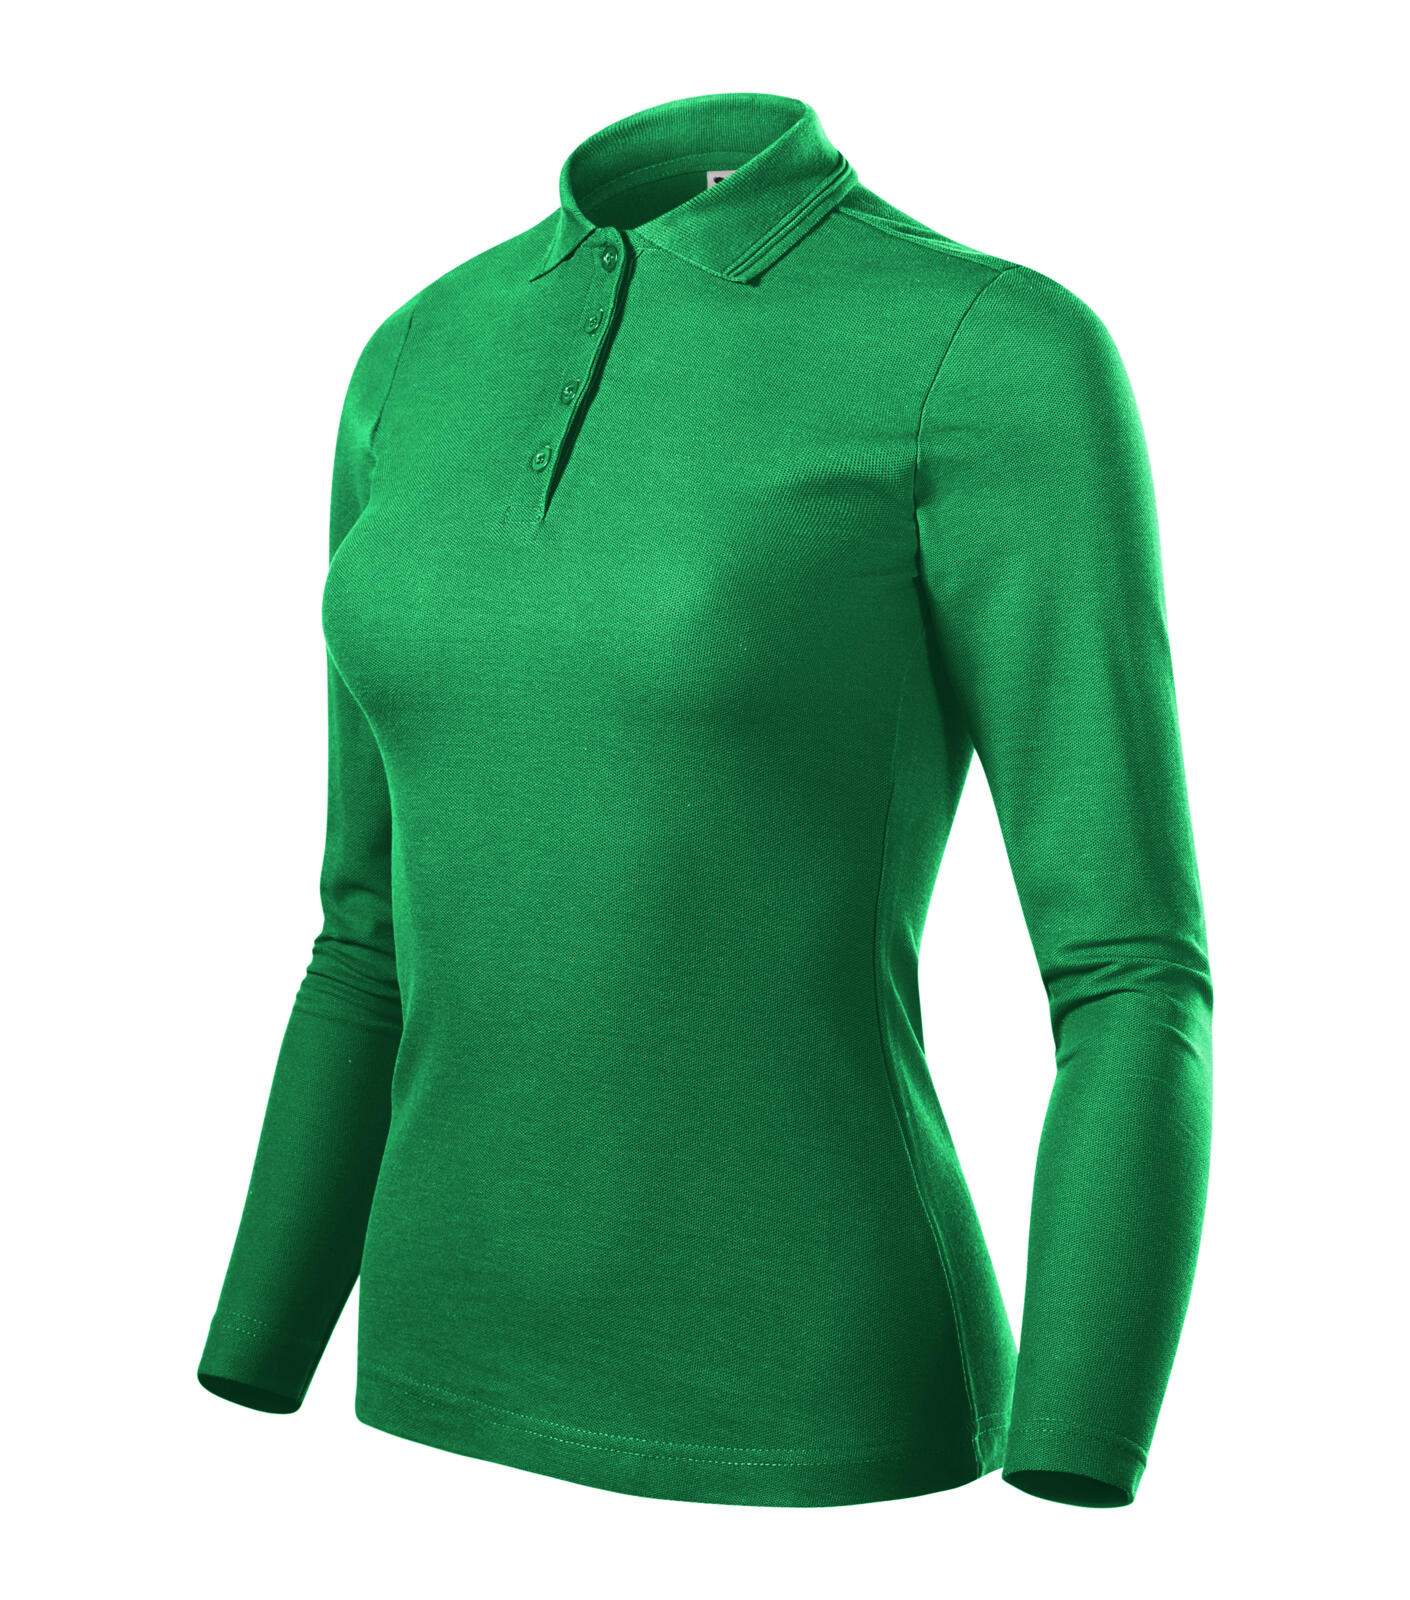 Pique Polo LS Polokošile dámská Barva: středně zelená, Velikost: S